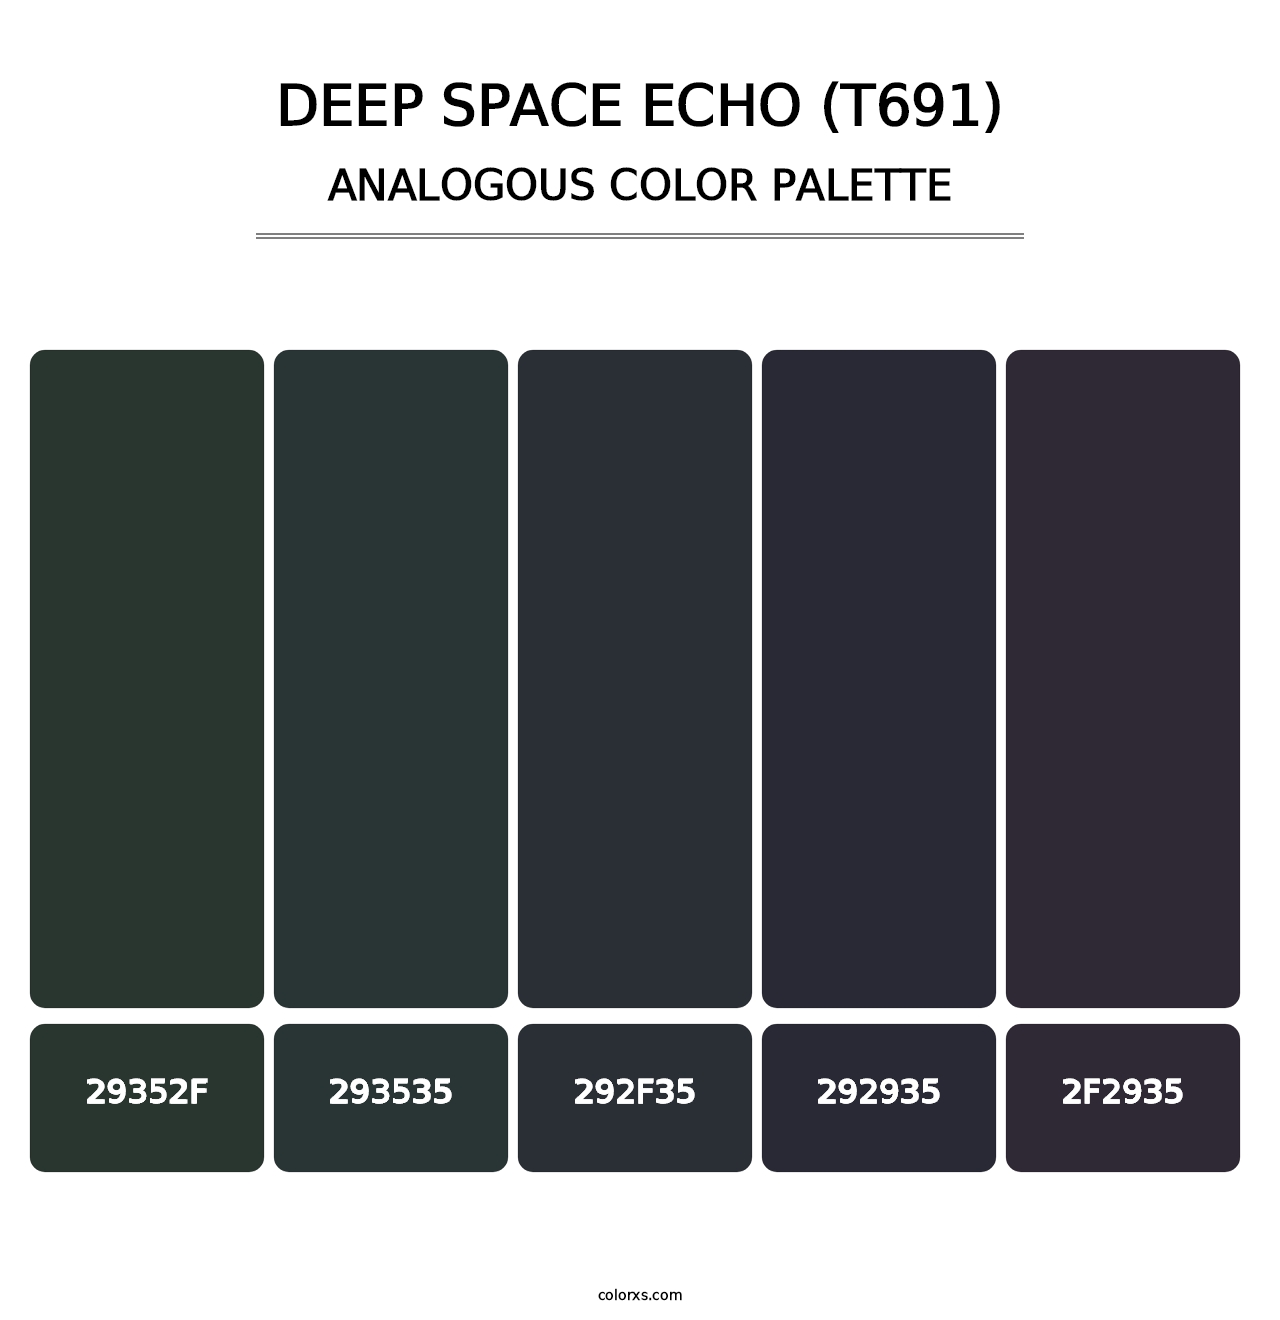 Deep Space Echo (T691) - Analogous Color Palette